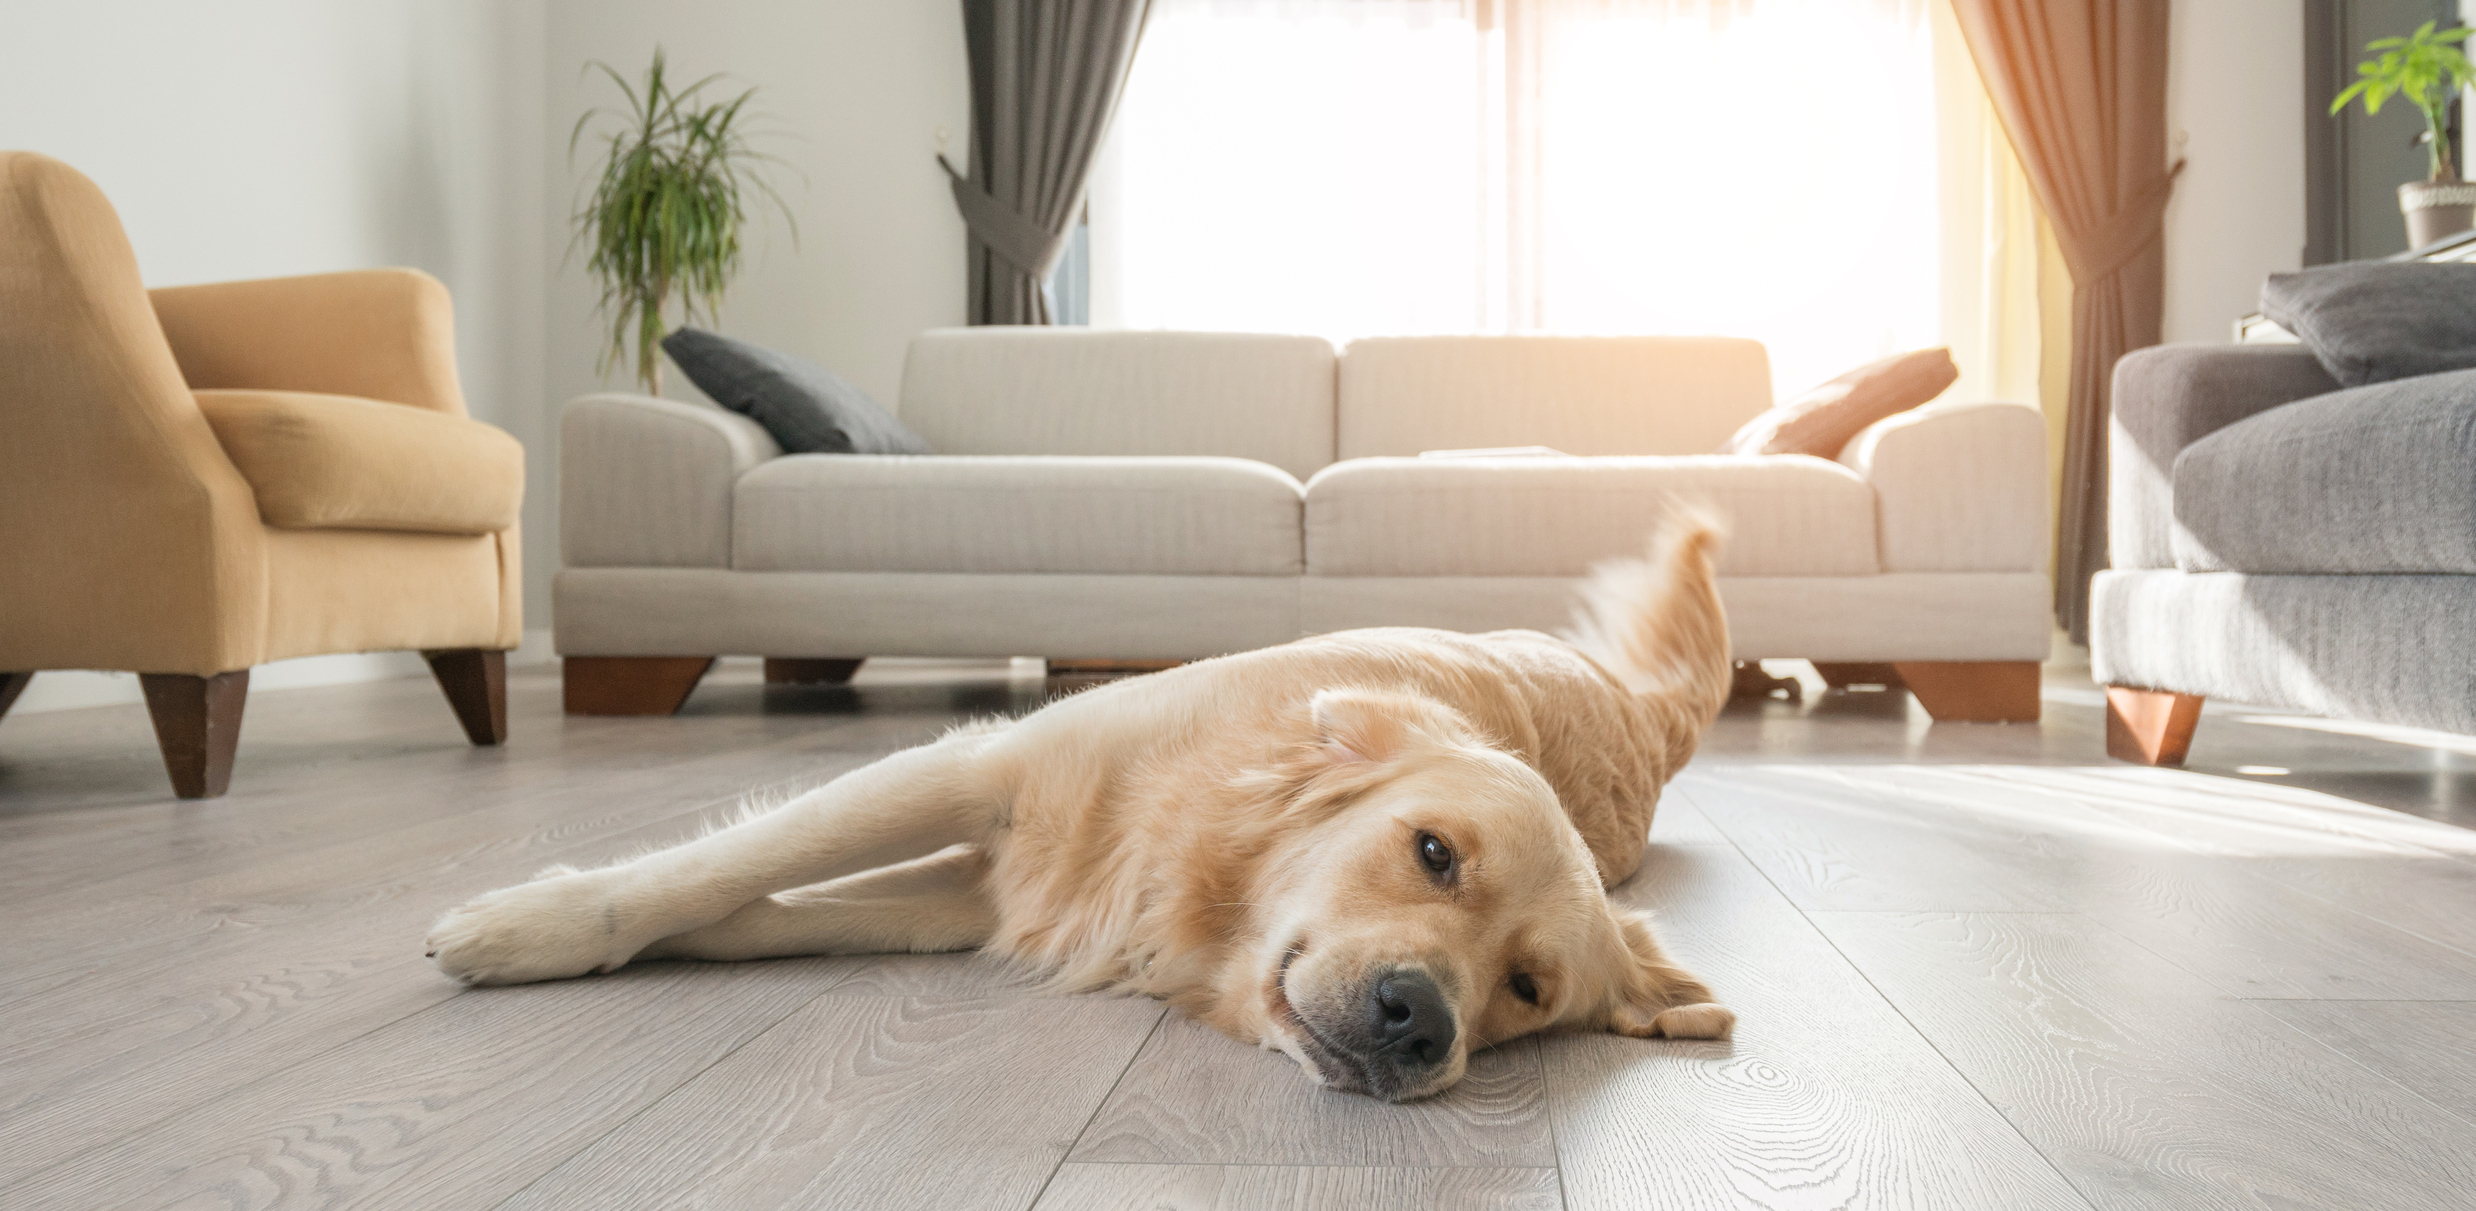 Best Wooden Floor For Pets